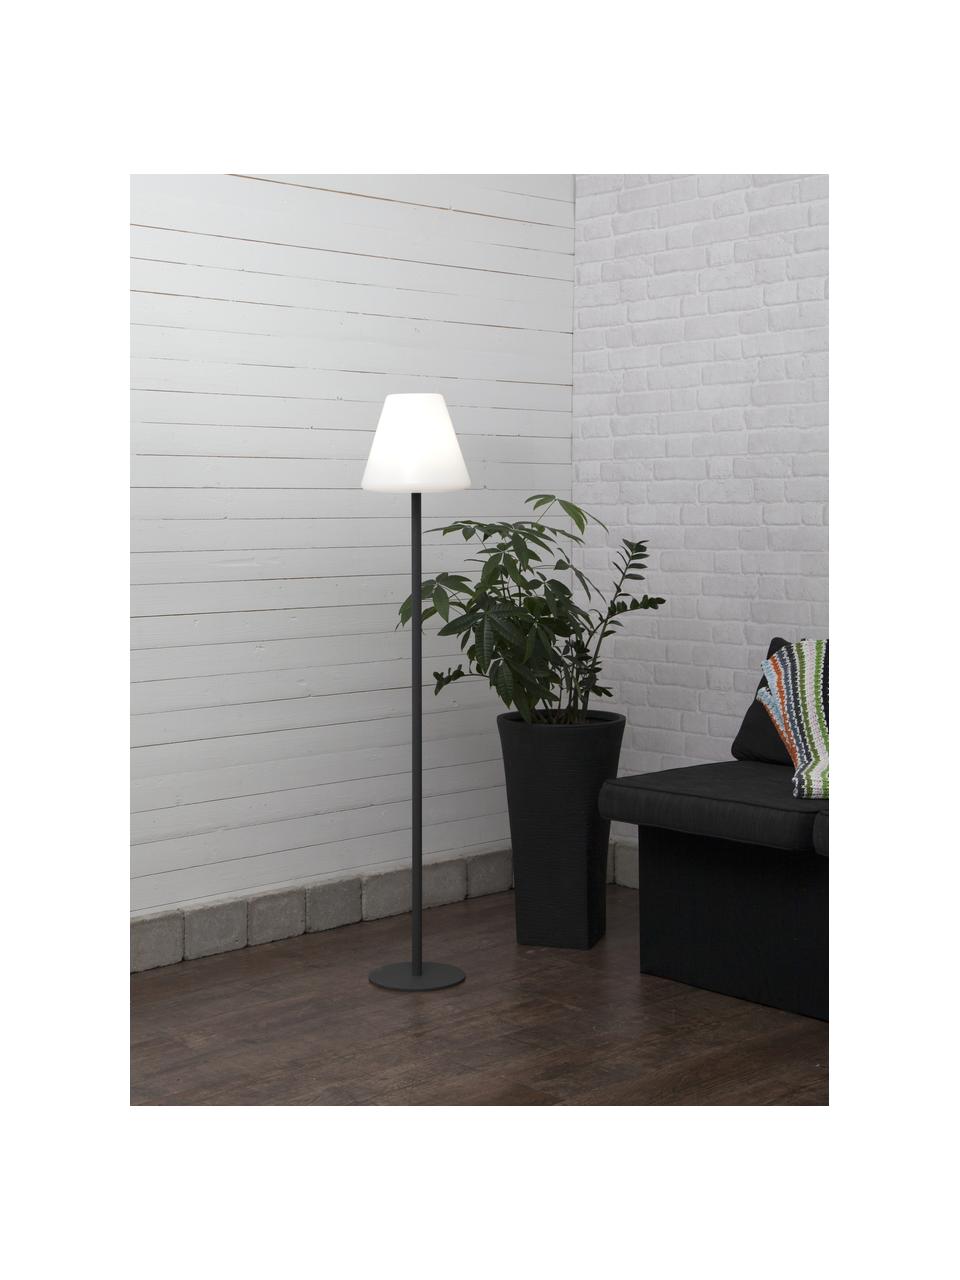 Lampadaire d'extérieur LED avec prise secteur Gardenlight, Blanc, anthracite, Ø 28 x haut. 150 cm